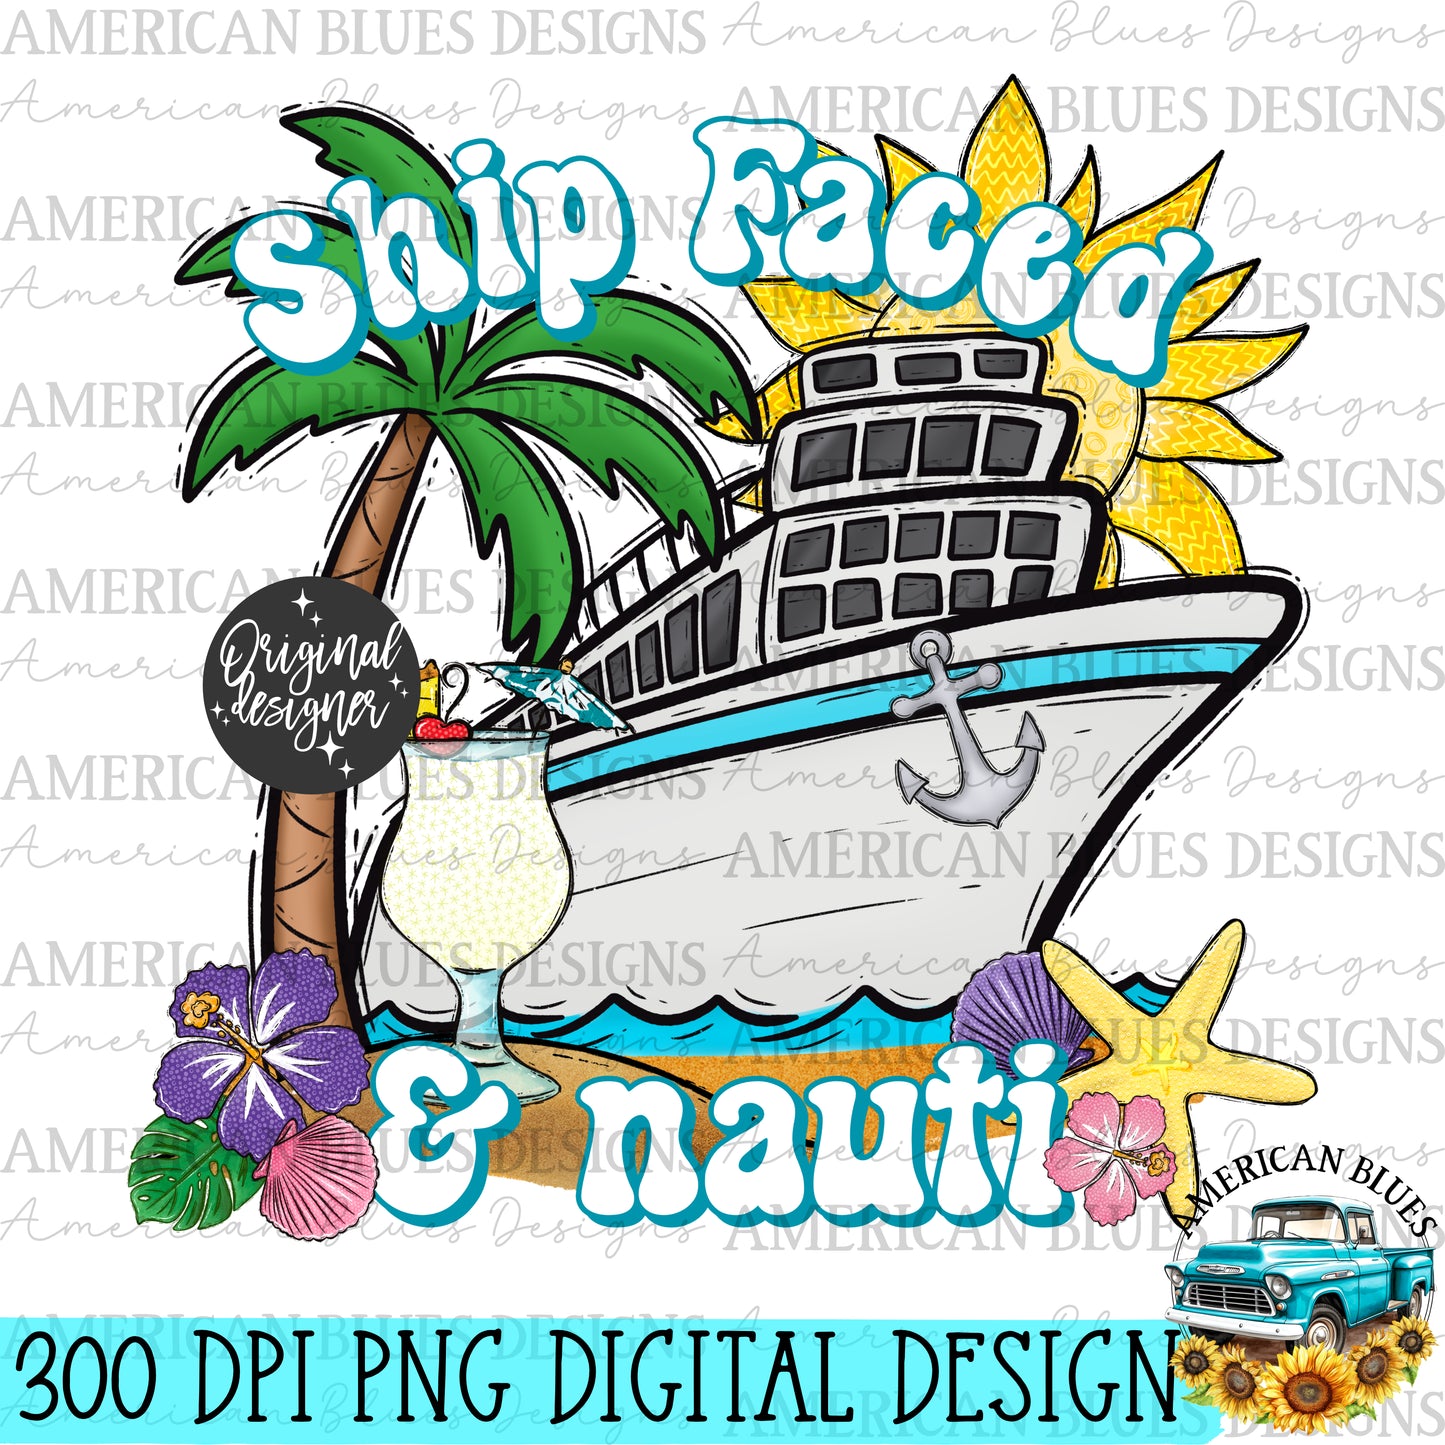 Ship faced & Nauti